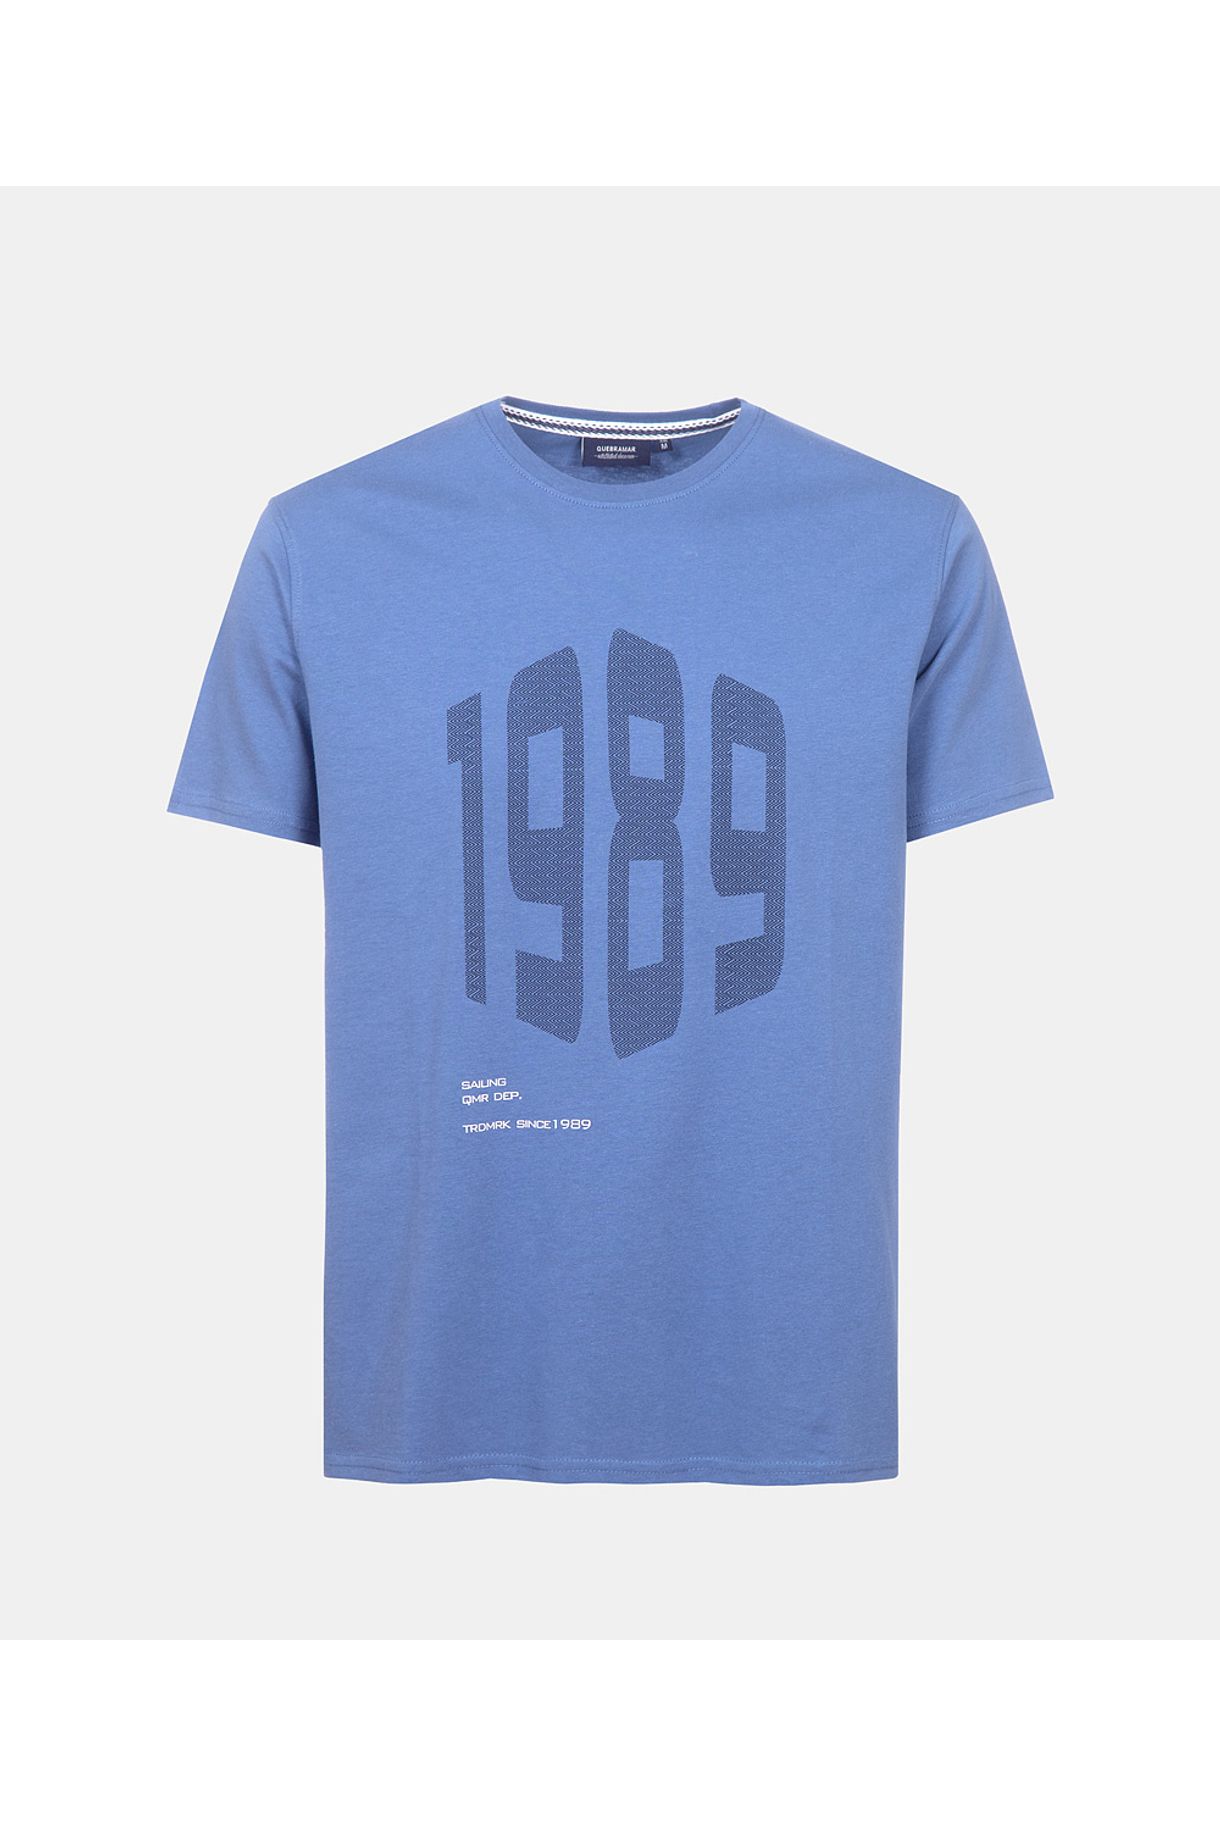 T Shirt Men 1989